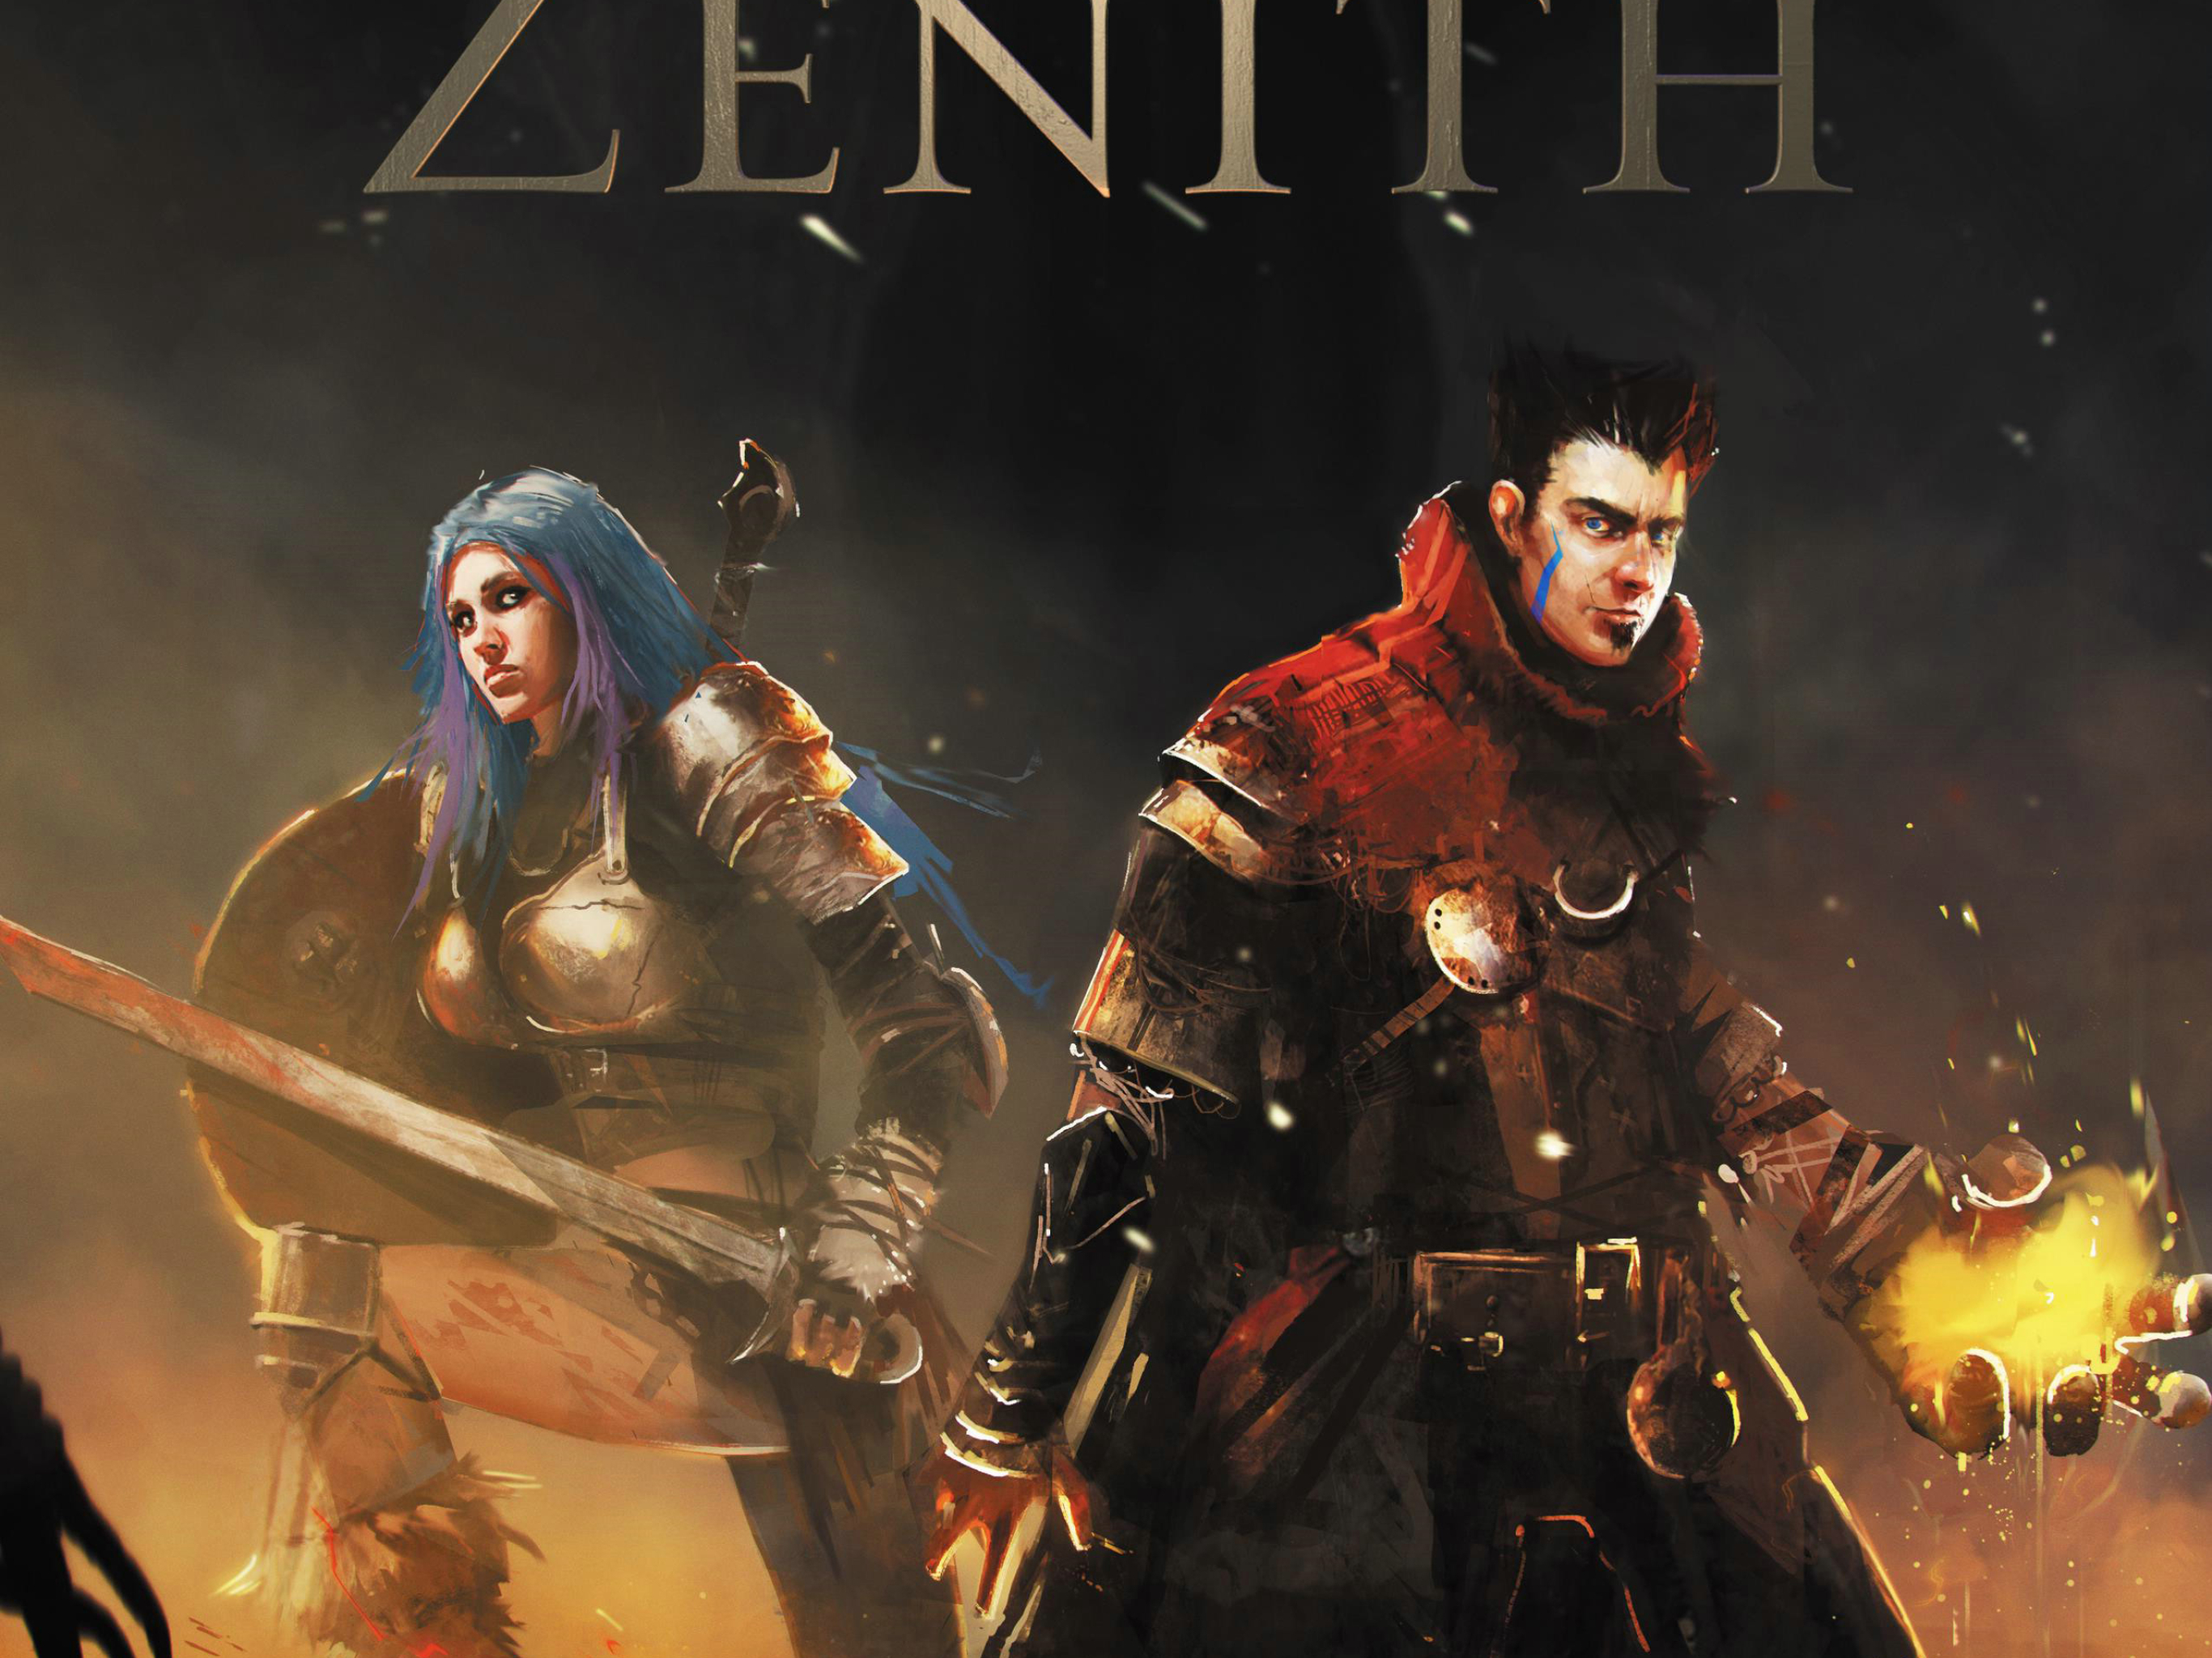 Zenith rng. Zenith RPG. Zenith (Nintendo Switch). Zenith game. Zenith game logo.